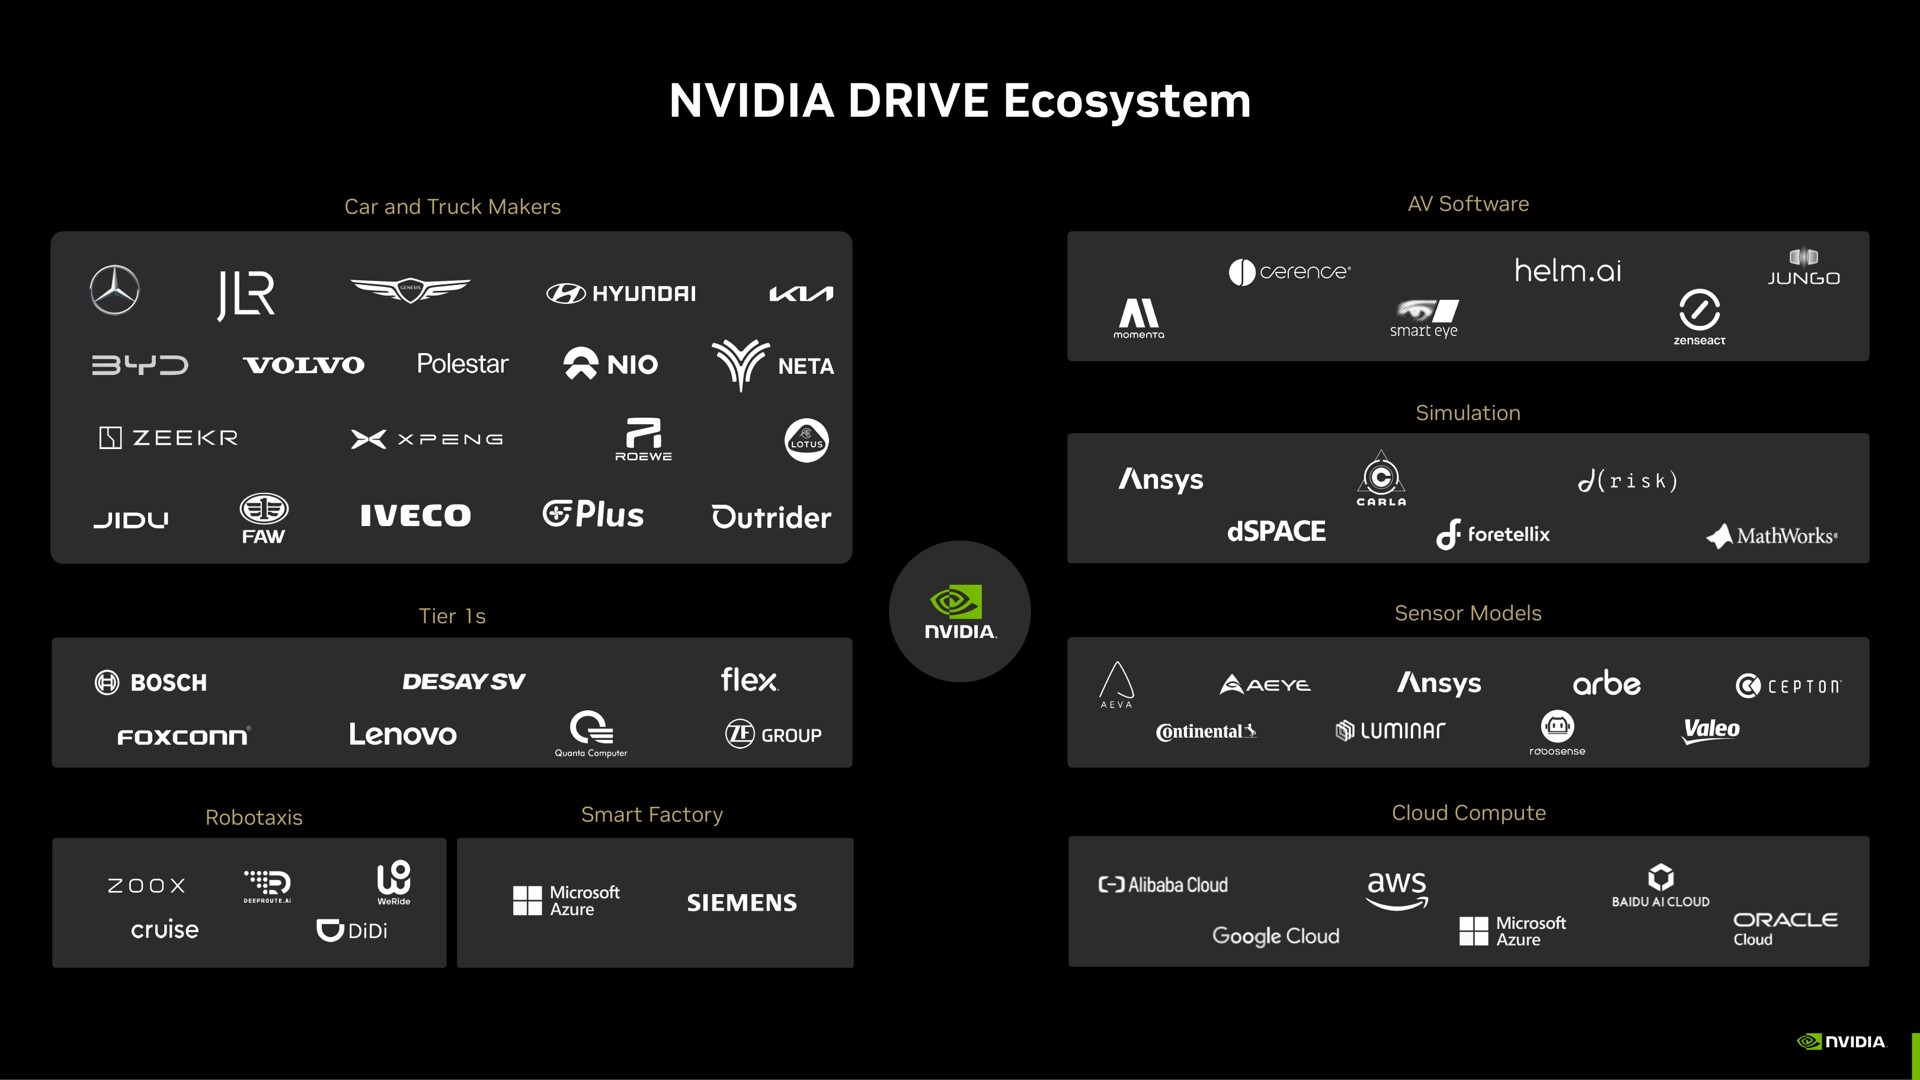 drive ecosystem | NVIDIA